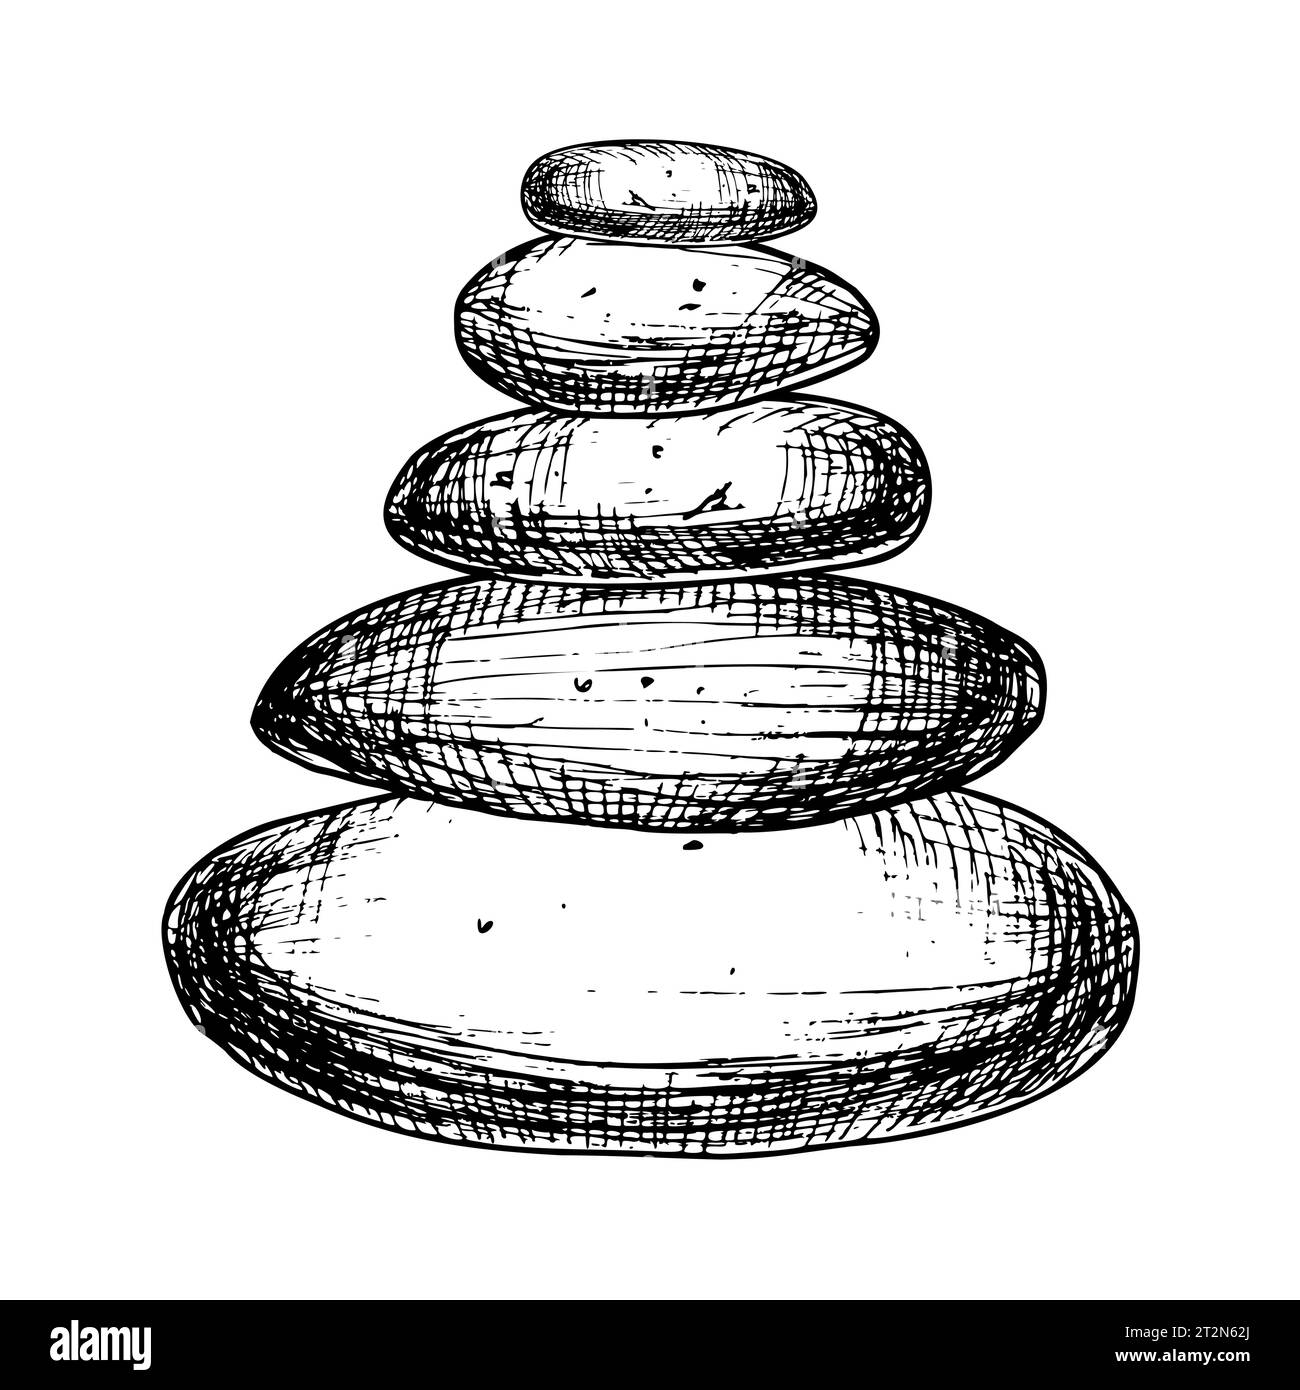 Pyramide der Balancing Stones für Zen oder Yoga. Handgezeichnete lineare Vektor-Illustration in Schwarz-weiß-Farben. Einfarbige Gravur für Meditation oder Spiritualität im Umrissstil. Geätzte Skizze. Stock Vektor